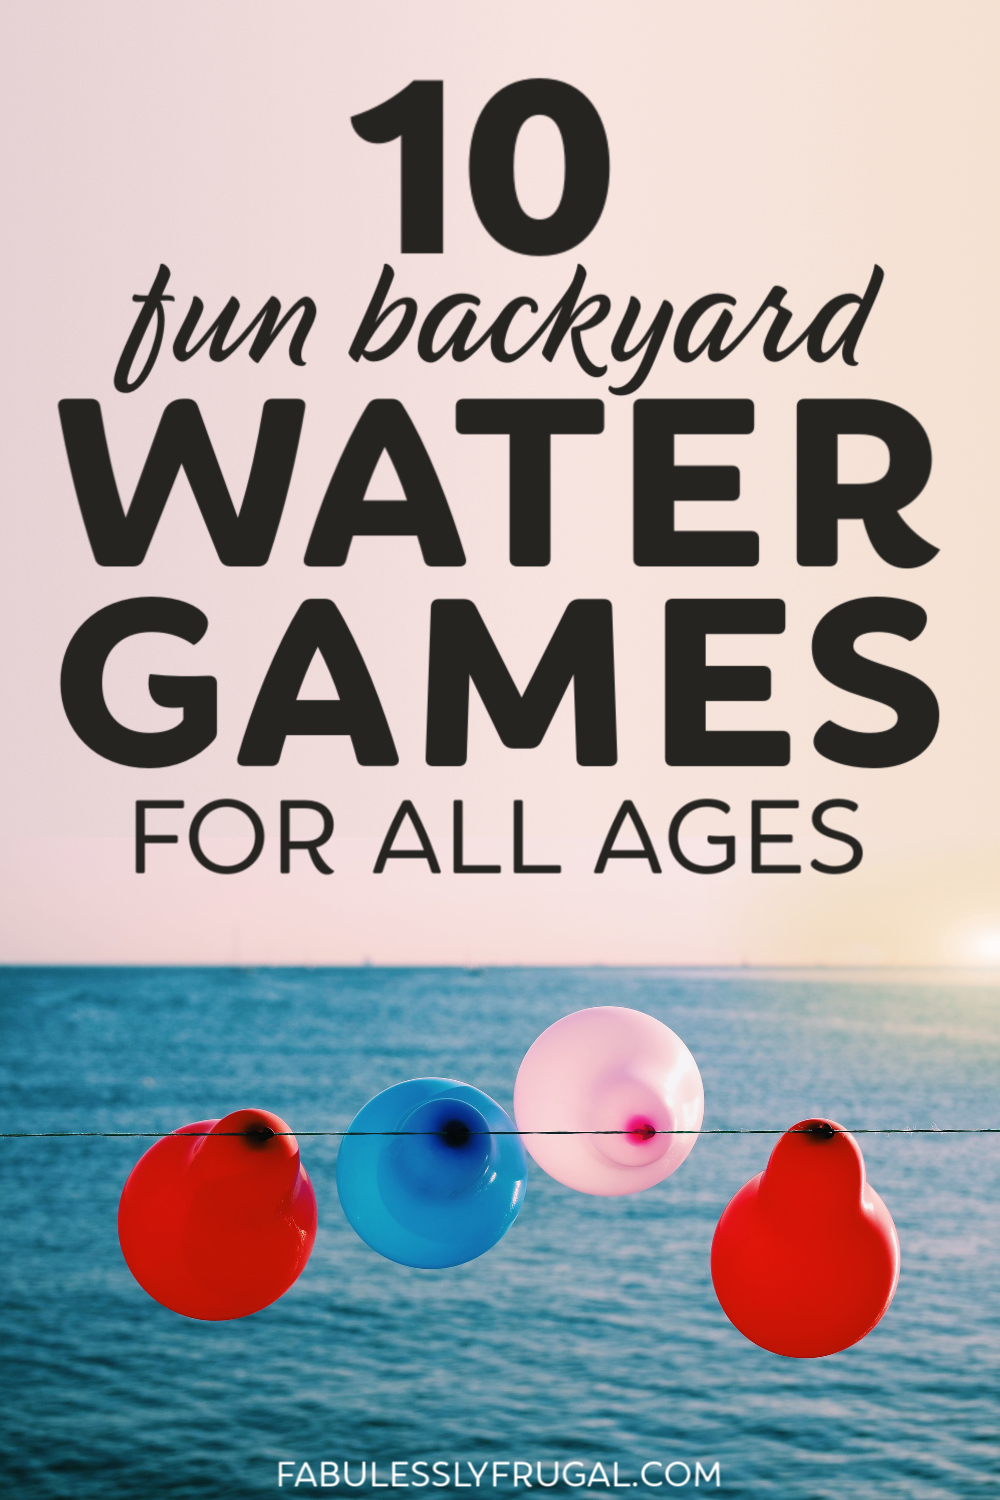 Fun backyard water games